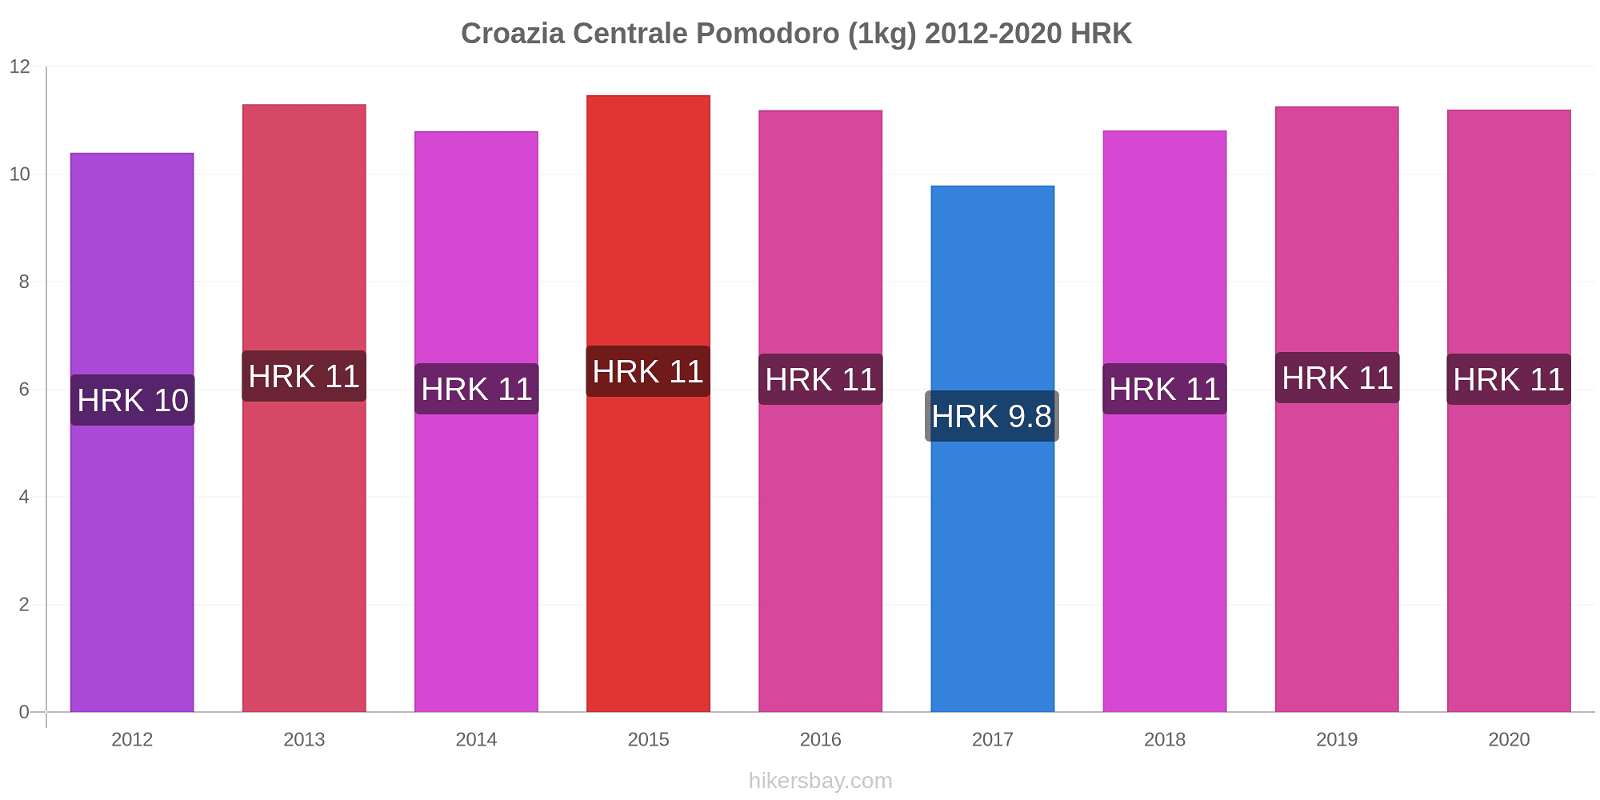 Croazia Centrale variazioni di prezzo Pomodoro (1kg) hikersbay.com